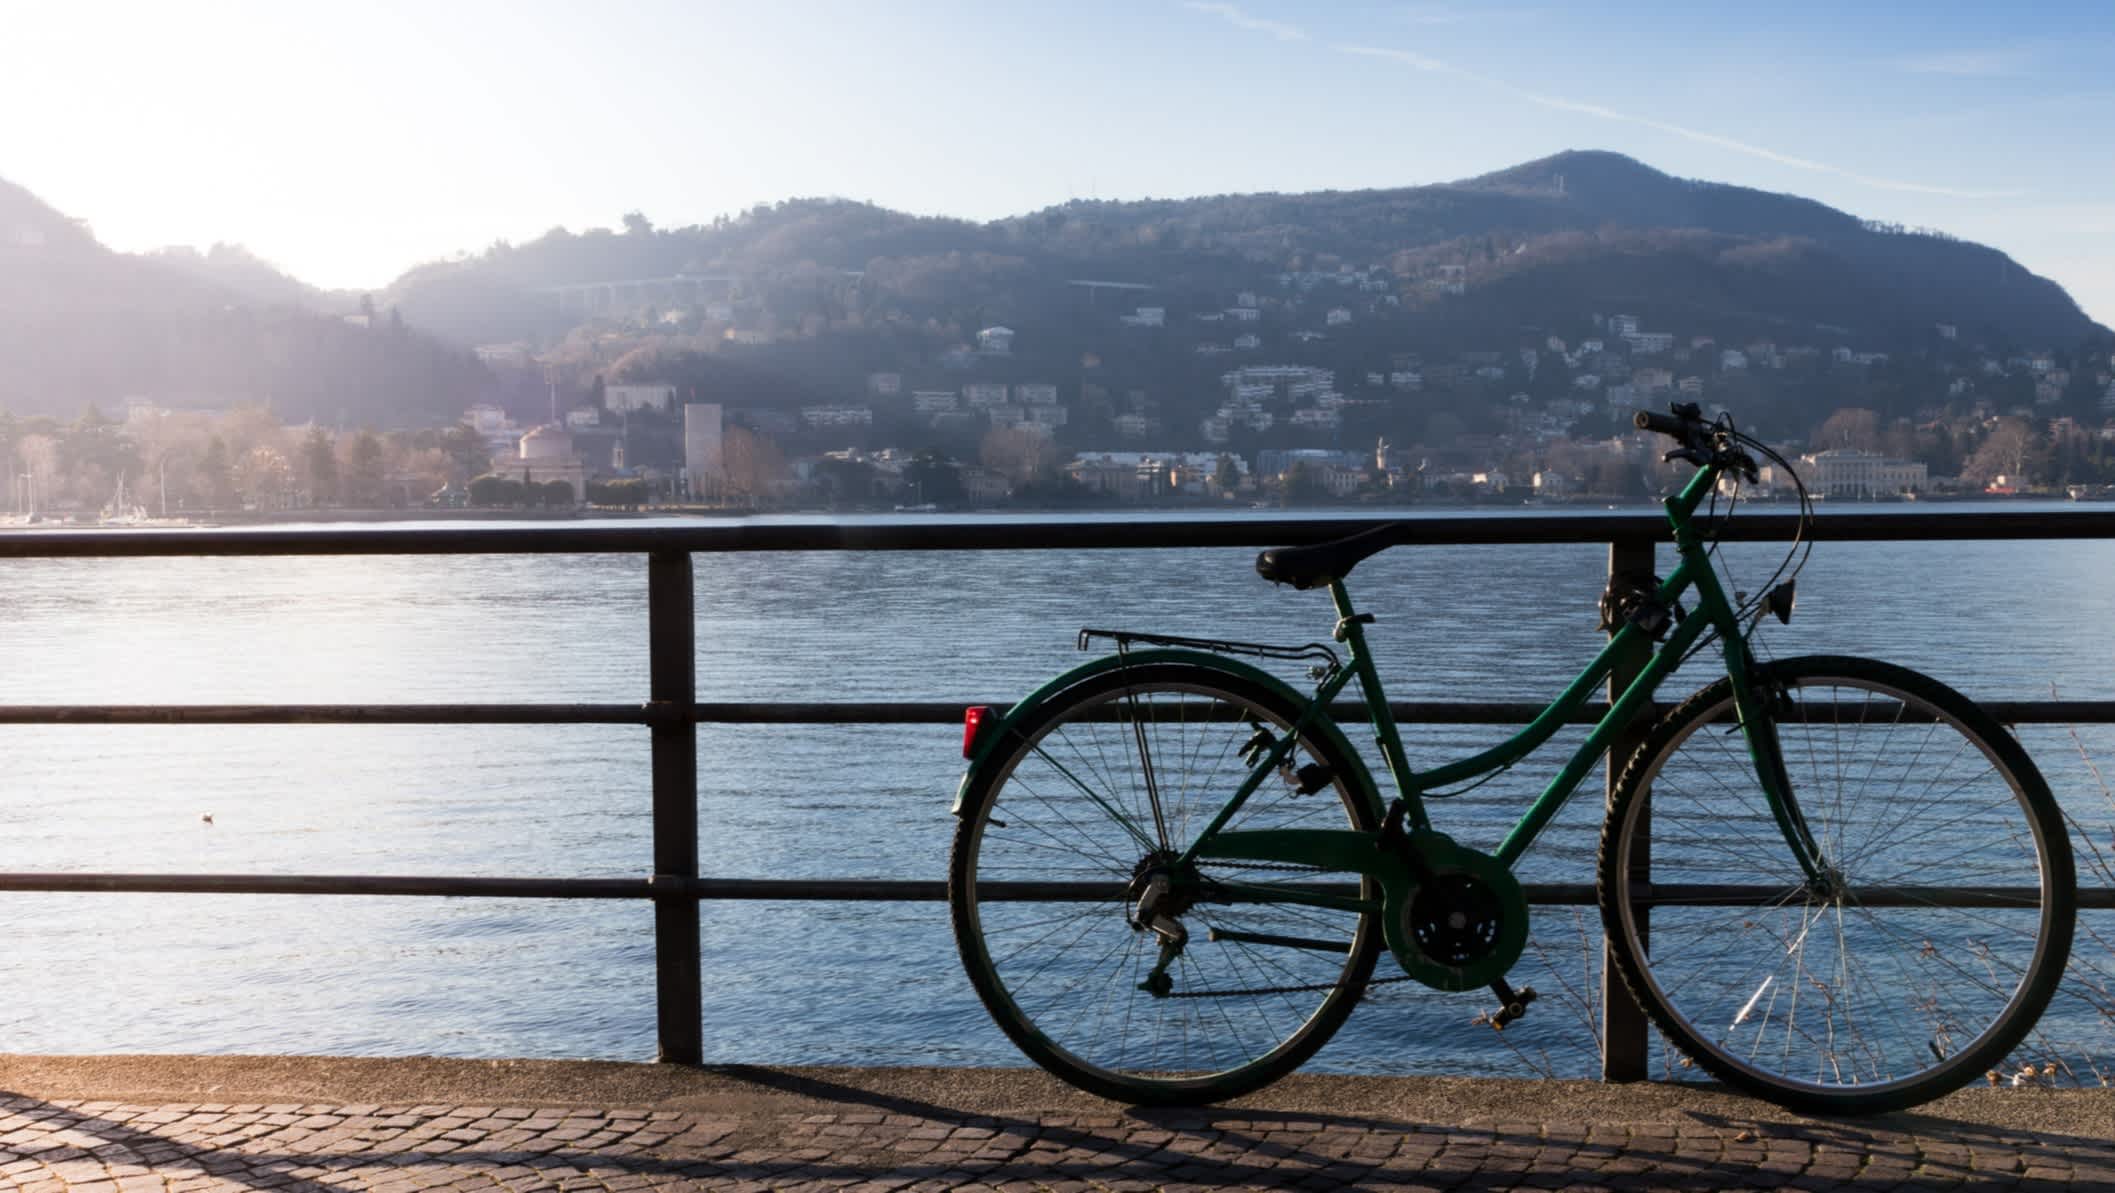 Vélo sur une rembarde devant le lac de Côme, en Italie.